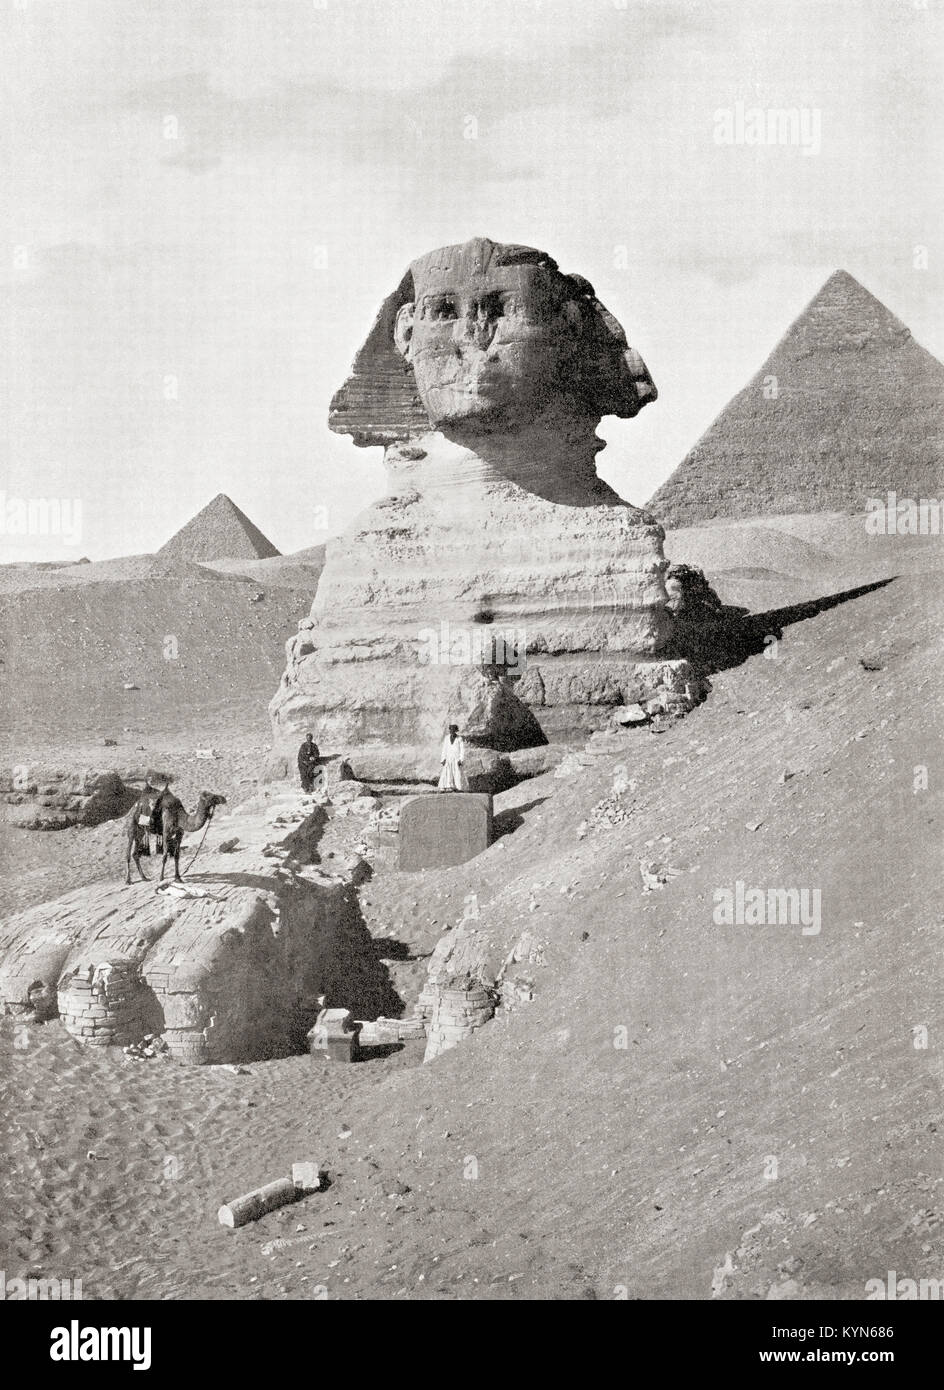 La Gran Esfinge de Giza en el complejo de la pirámide, en Giza Plateau, El Cairo, Egipto. Una escultura de gran tamaño generalmente se cree que representan al faraón Khafre. Aquí se ven los trabajadores limpiando la arena que ahoga la base del monumento. A partir de las Maravillas del Mundo, publicado c.1920. Foto de stock